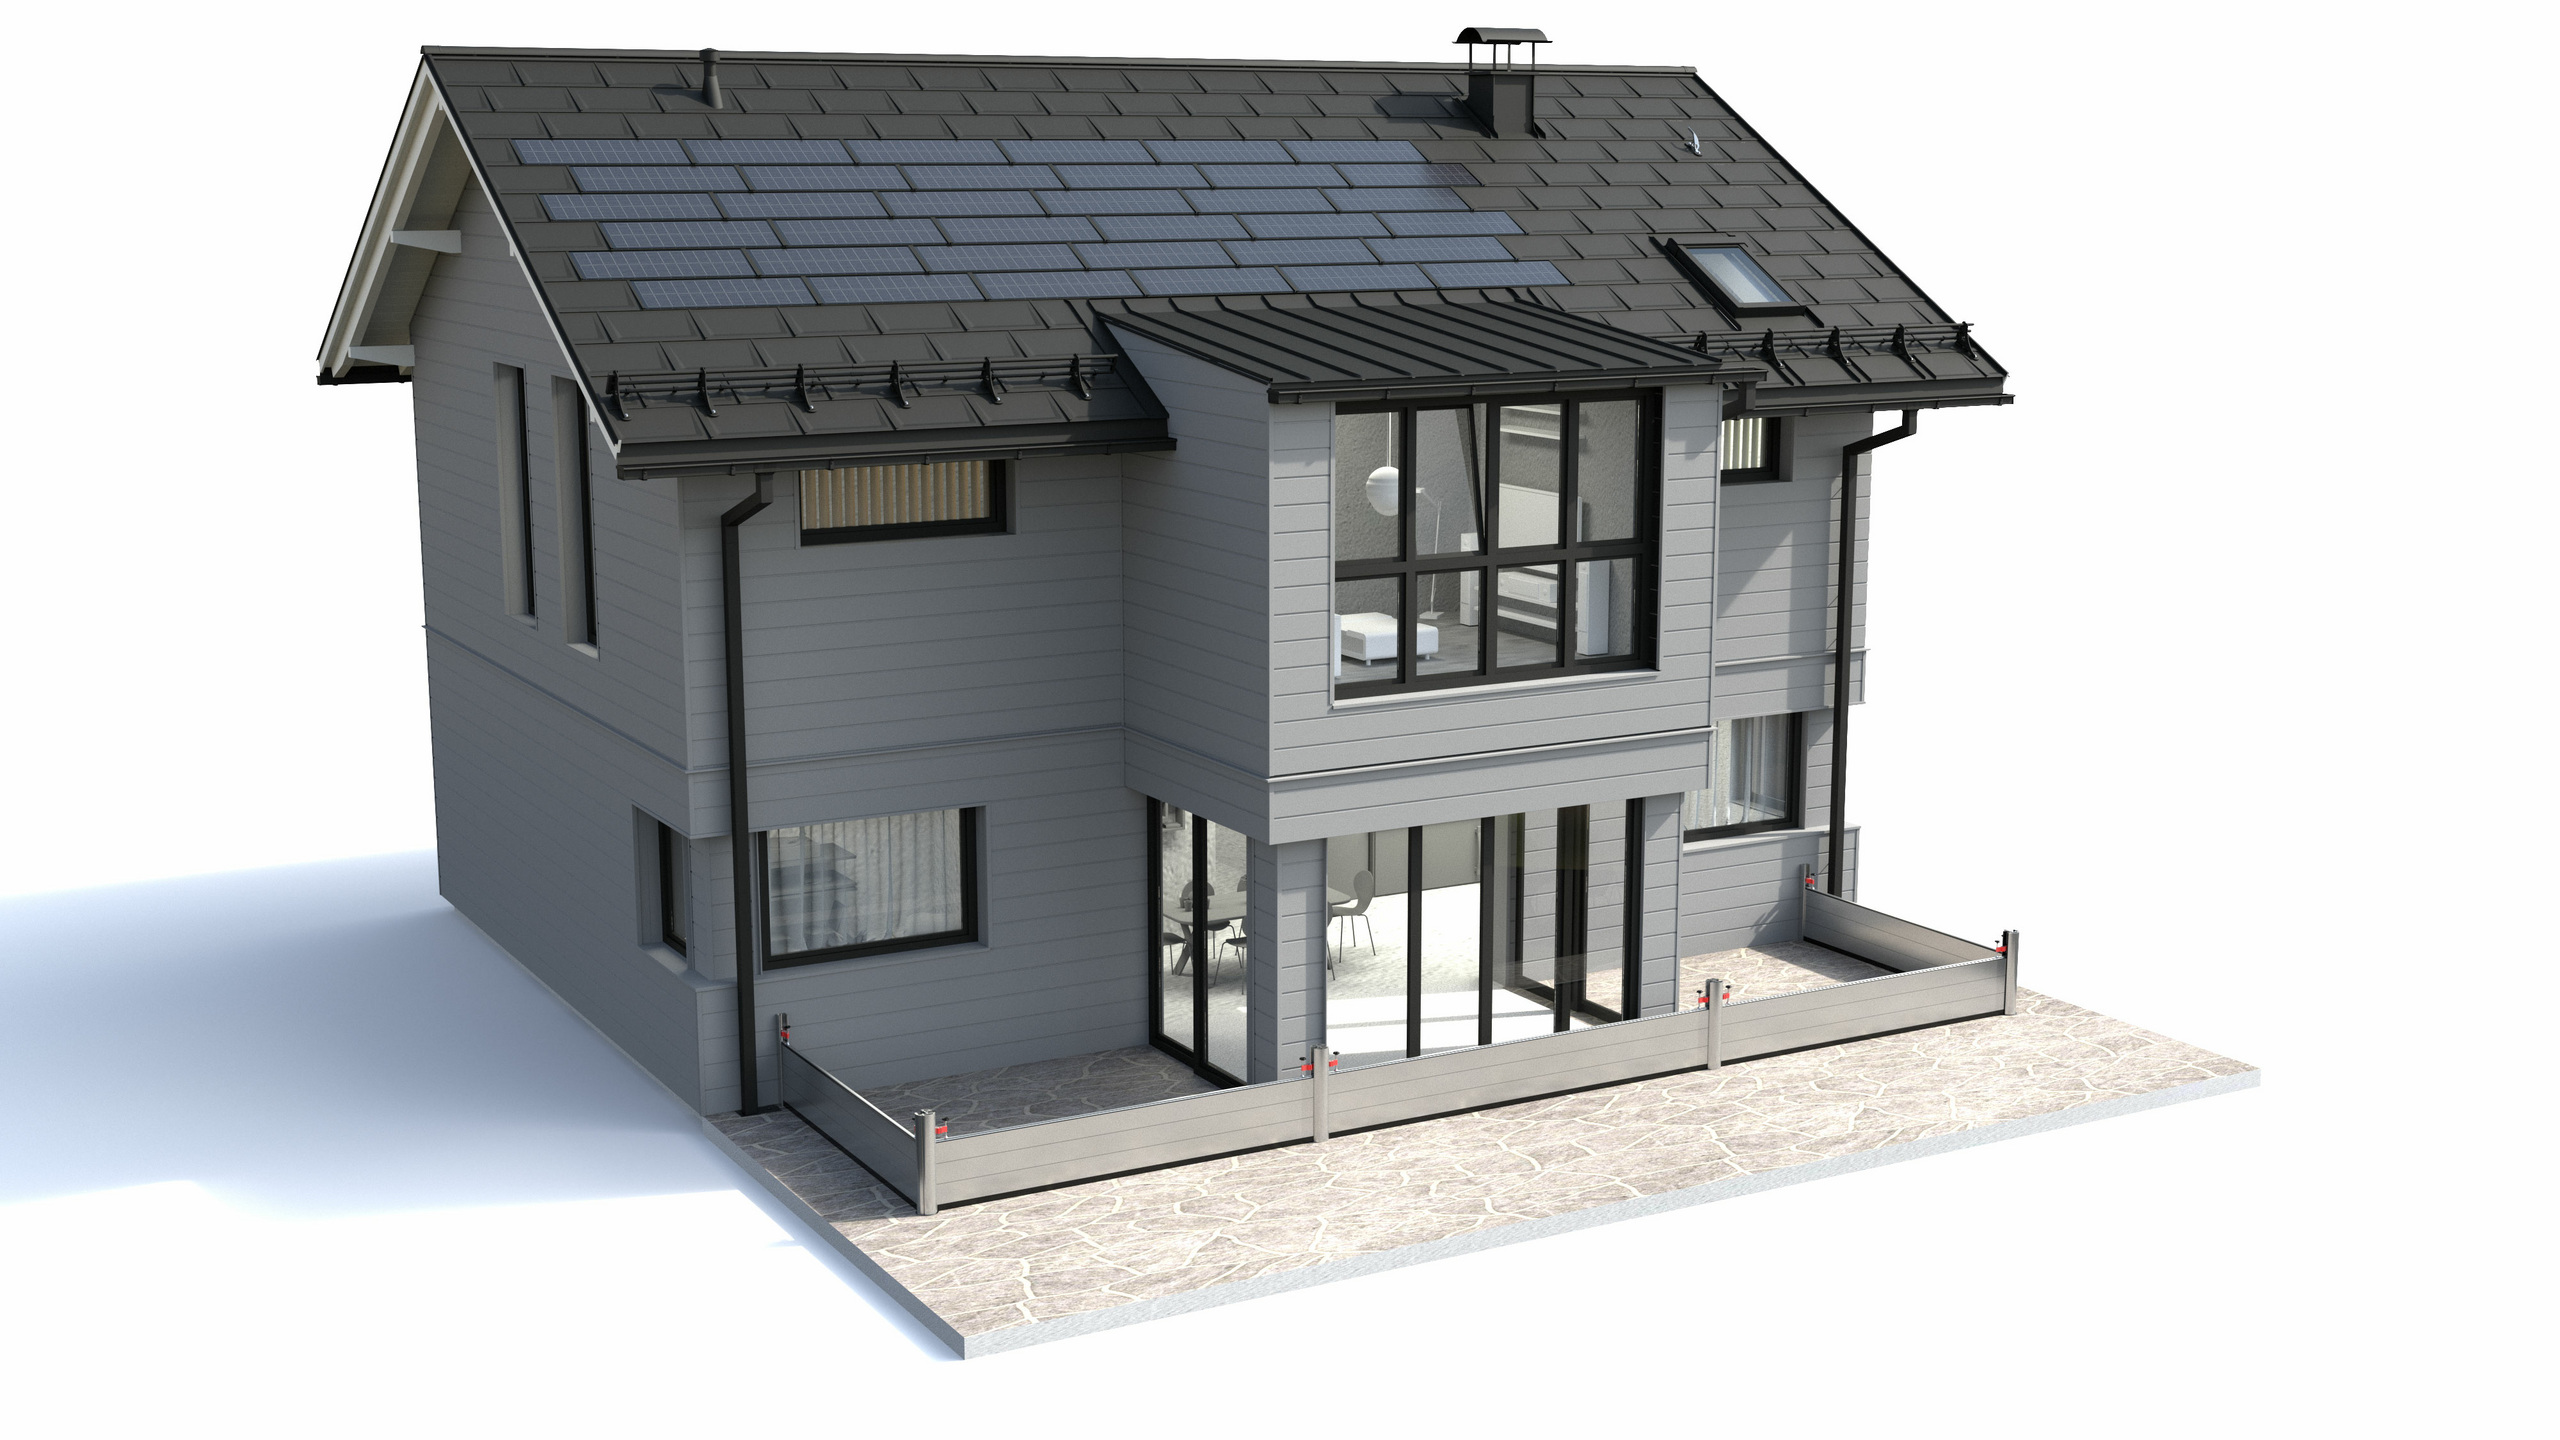 PREFA Komplettsystem mit Dachplatte R.16, Solardachplatte, Siding Fassade, Dachentwässerung und Hochwasserschutz